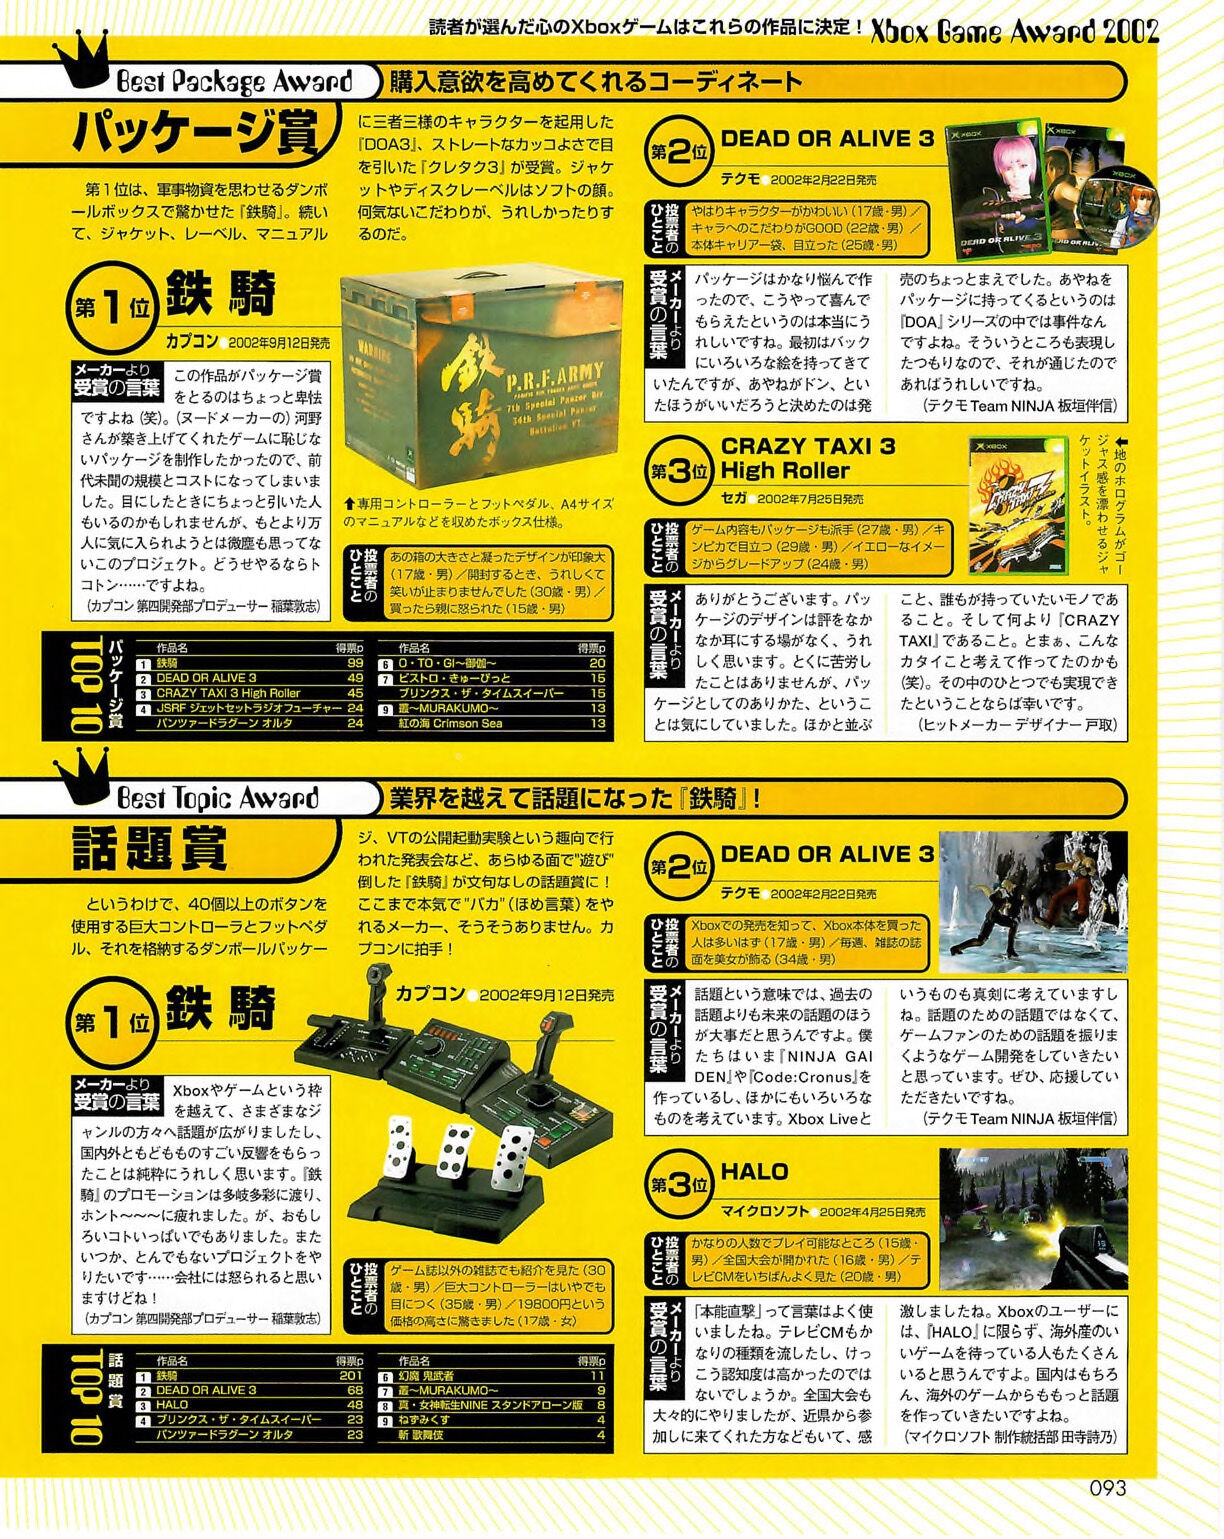 Famitsu_Xbox_2003-04_jp2 92